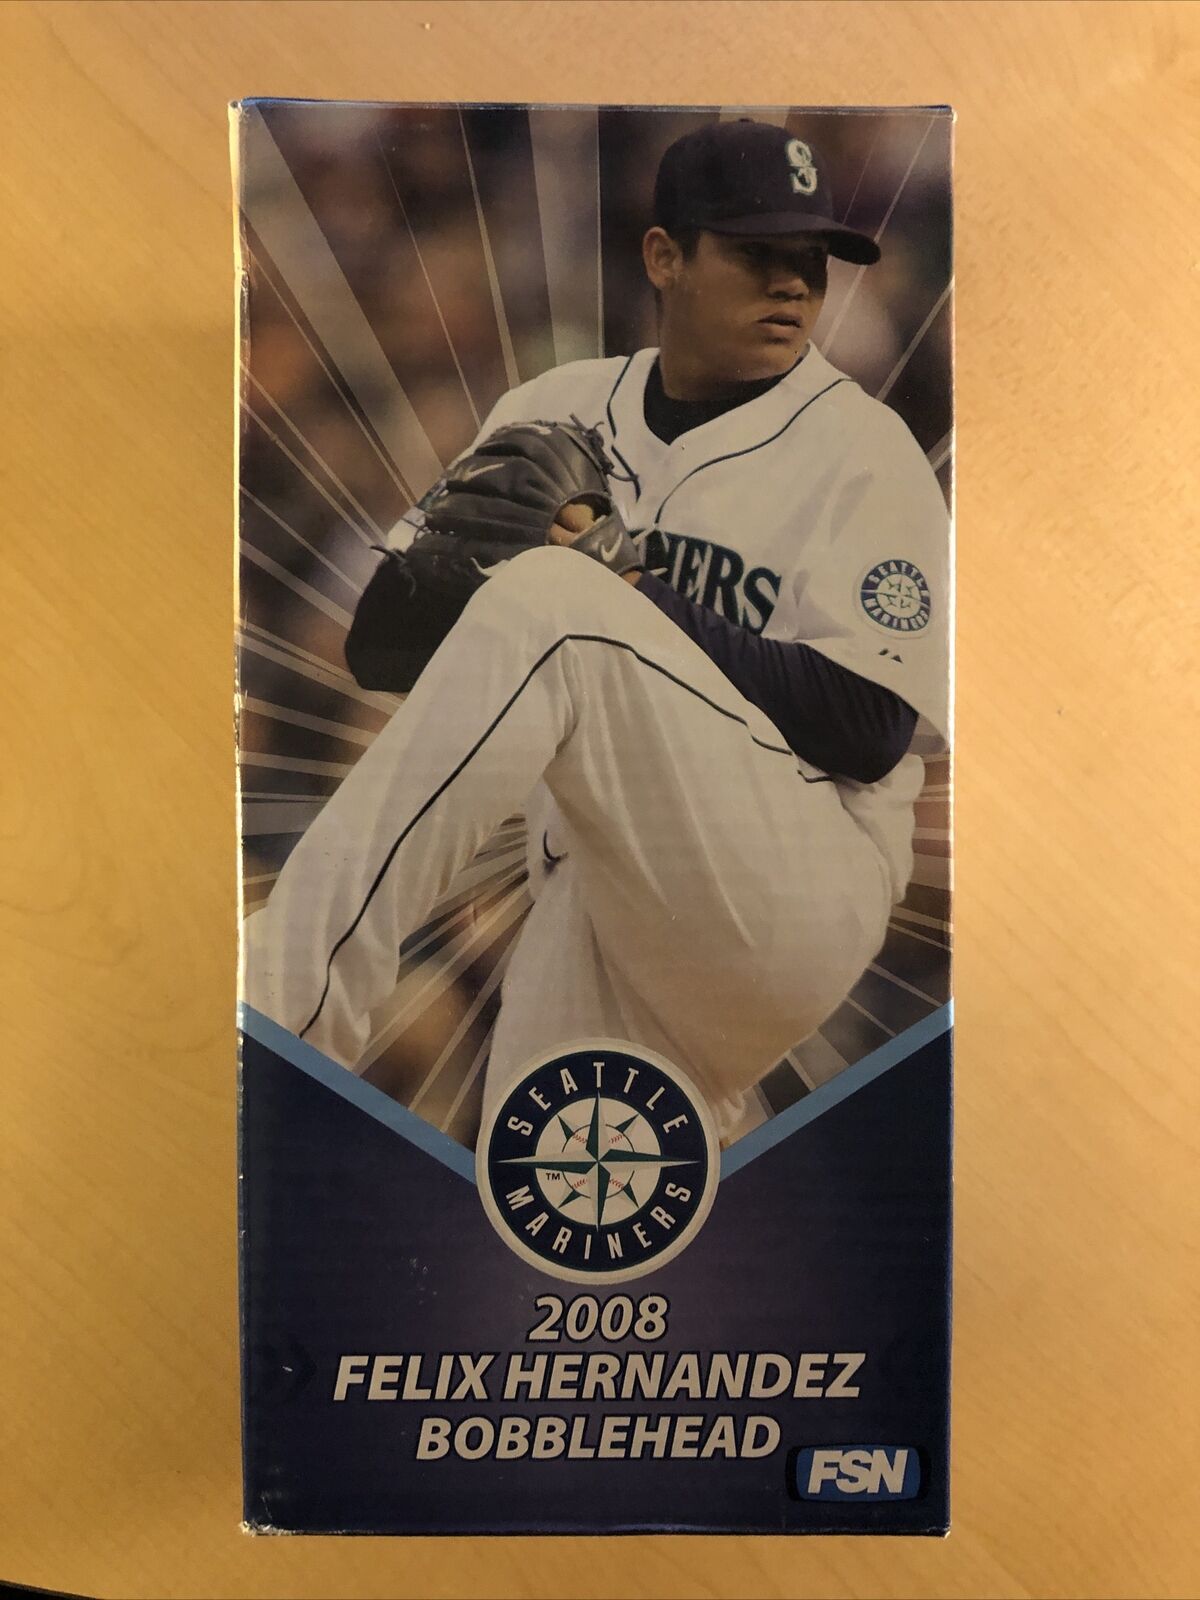 2008 Seattle Mariners Felix Hernandez Bobblehead - Original Package